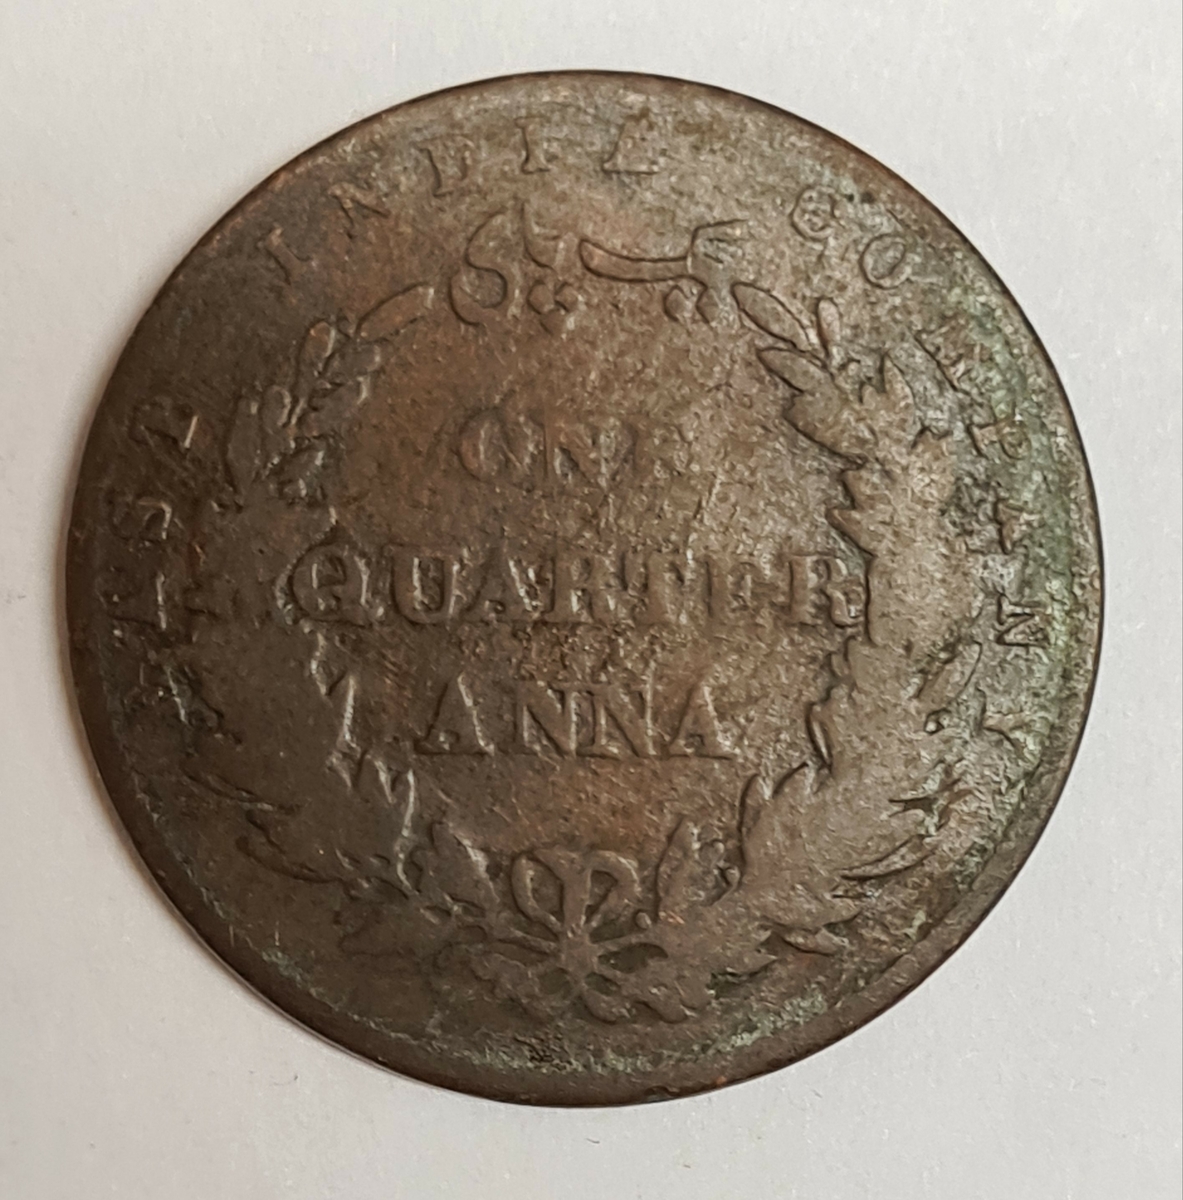 Tre mynt från Indien/Storbritanien.
1/4 Anna, 1835
1/4 Anna, 1858
1/4 Anna, 1858